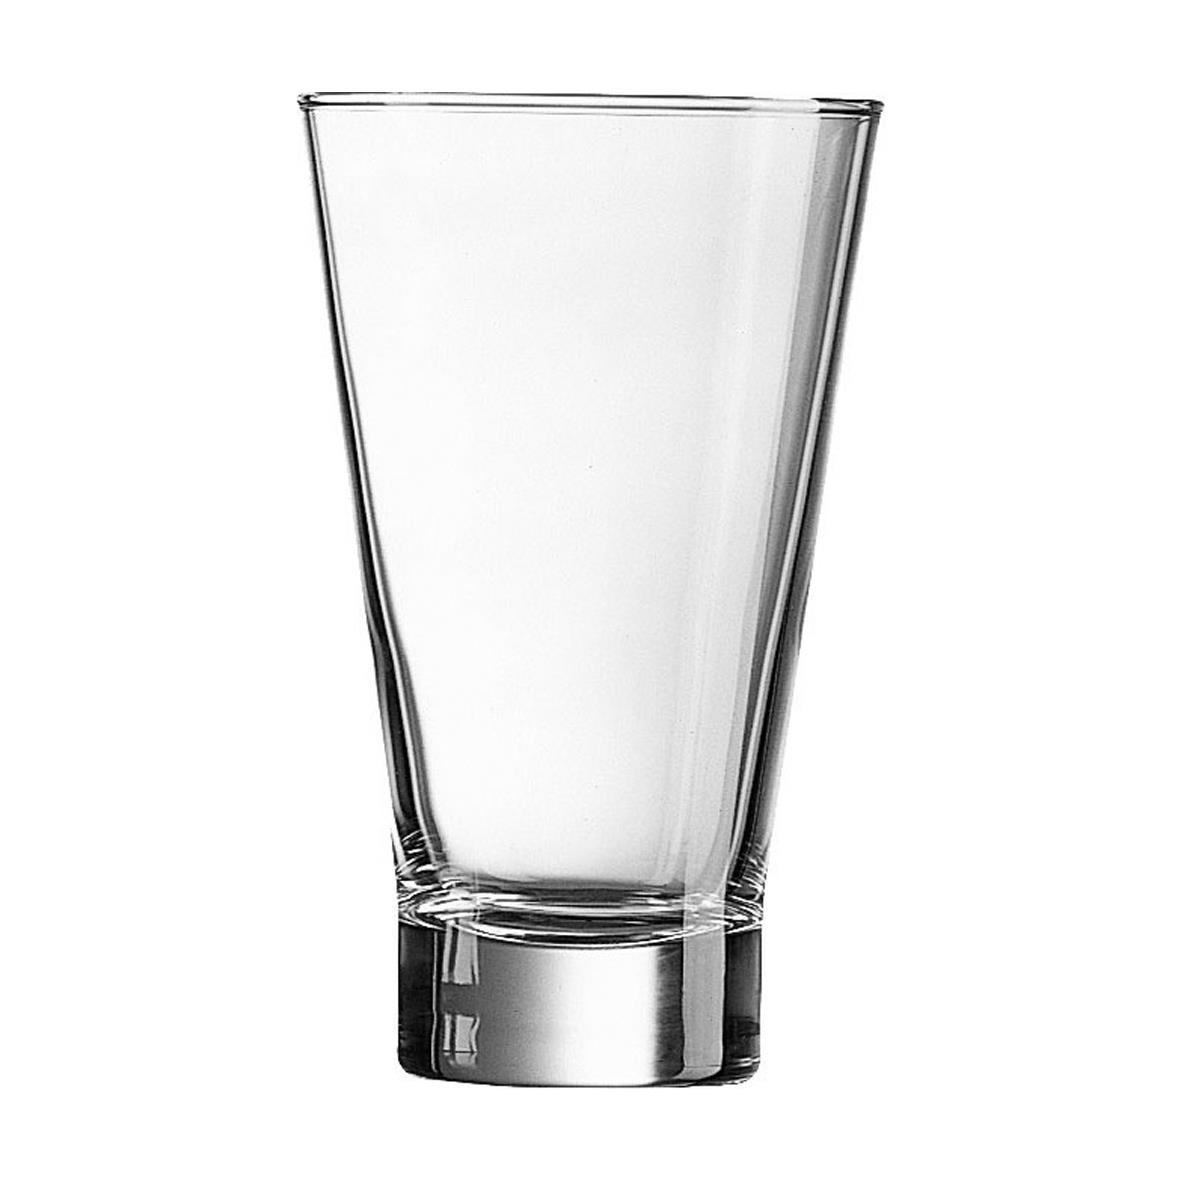 Shetland glas met een inhoud van 35 cl om te laten bedrukken